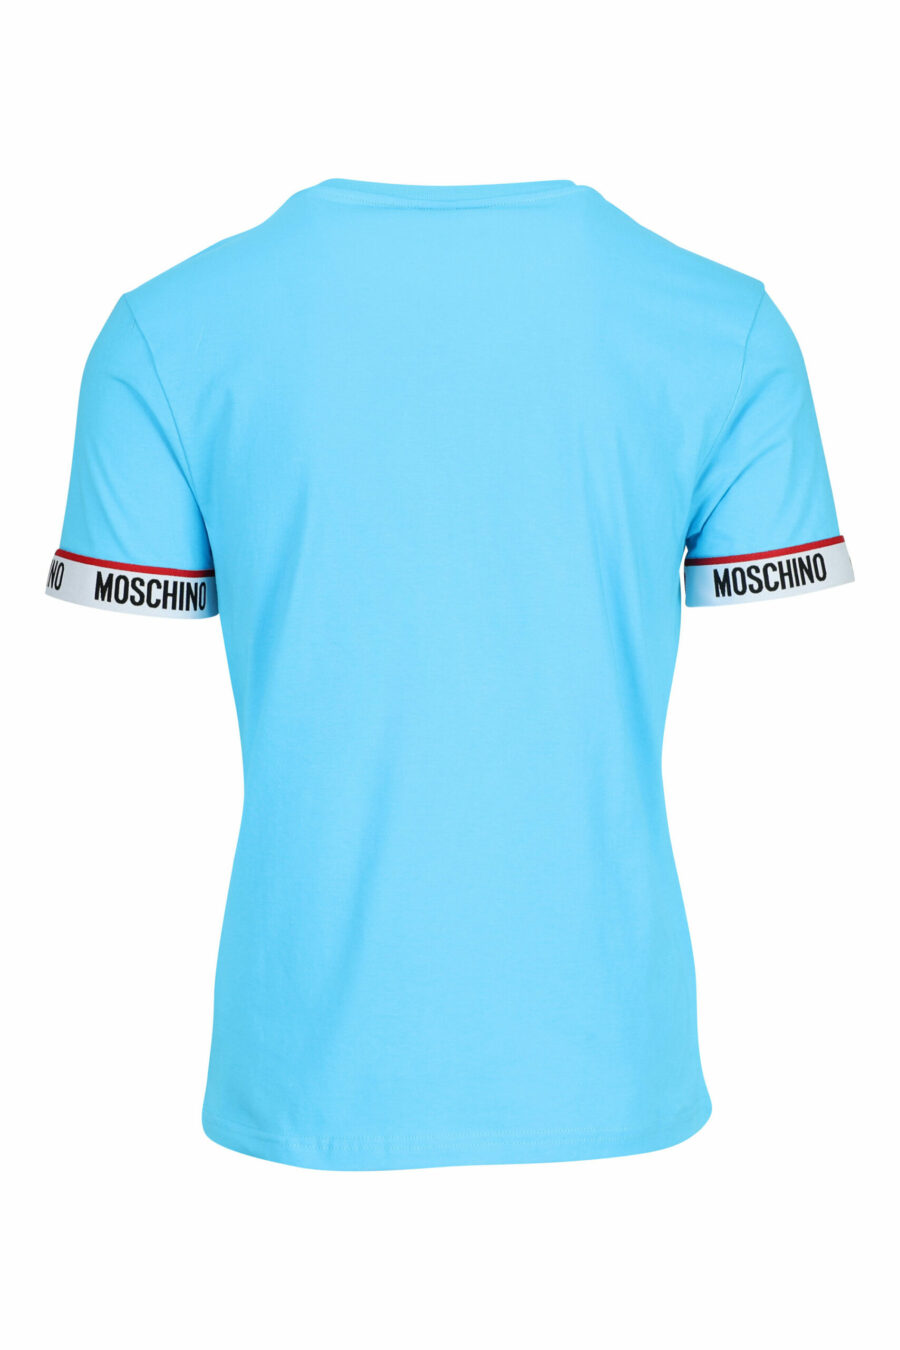 Hellblaues T-Shirt mit weißem Logo am Ärmel - 667113604626 1 skaliert